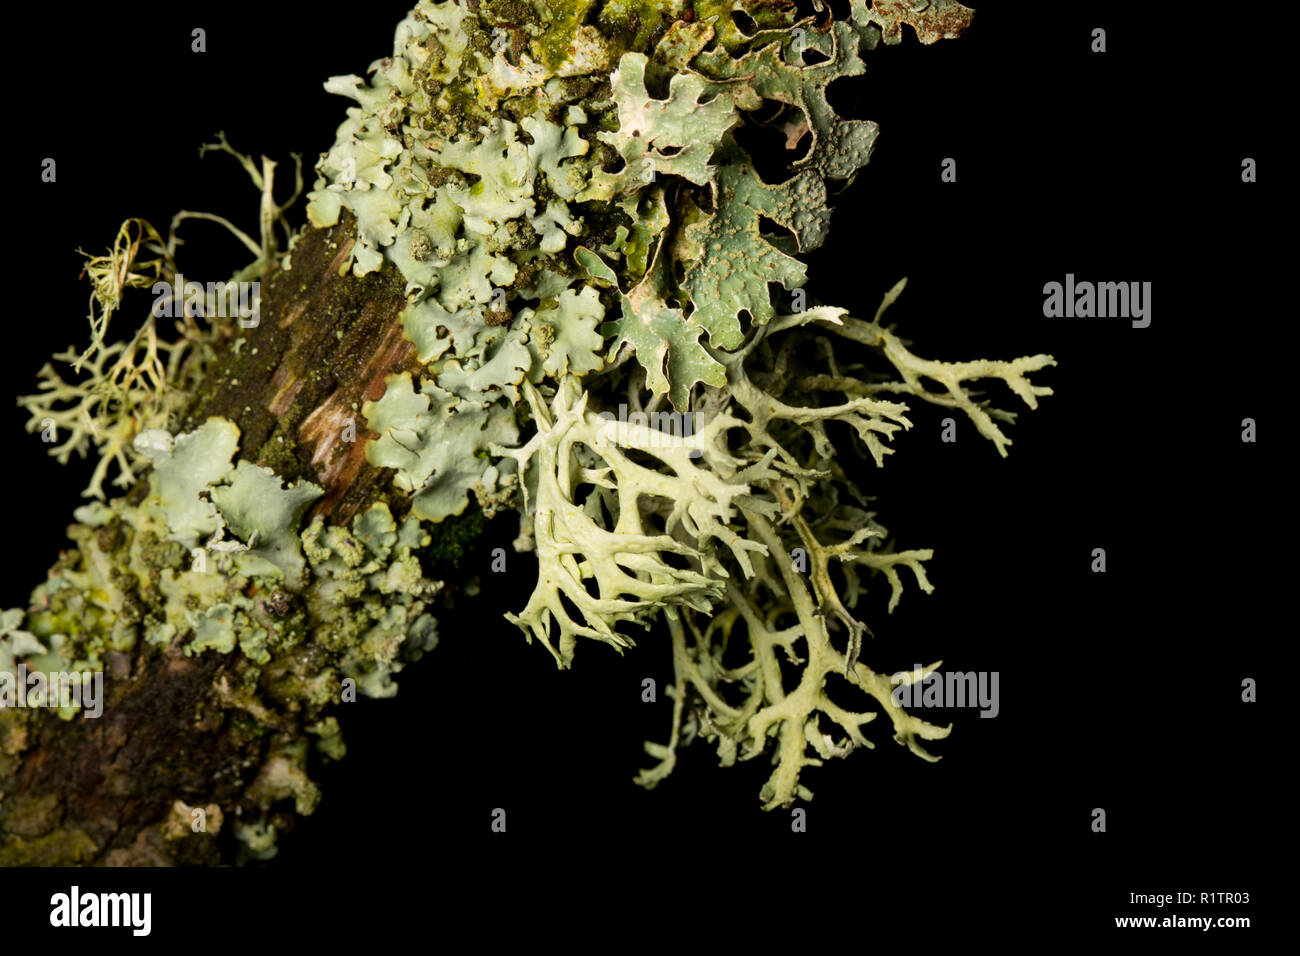 Il muschio di quercia lichen, Everania prunastri, che cresce su un ramo di albero in una zona rurale del bosco. I licheni sono sensibili all'inquinamento atmosferico. I licheni crescono Foto Stock